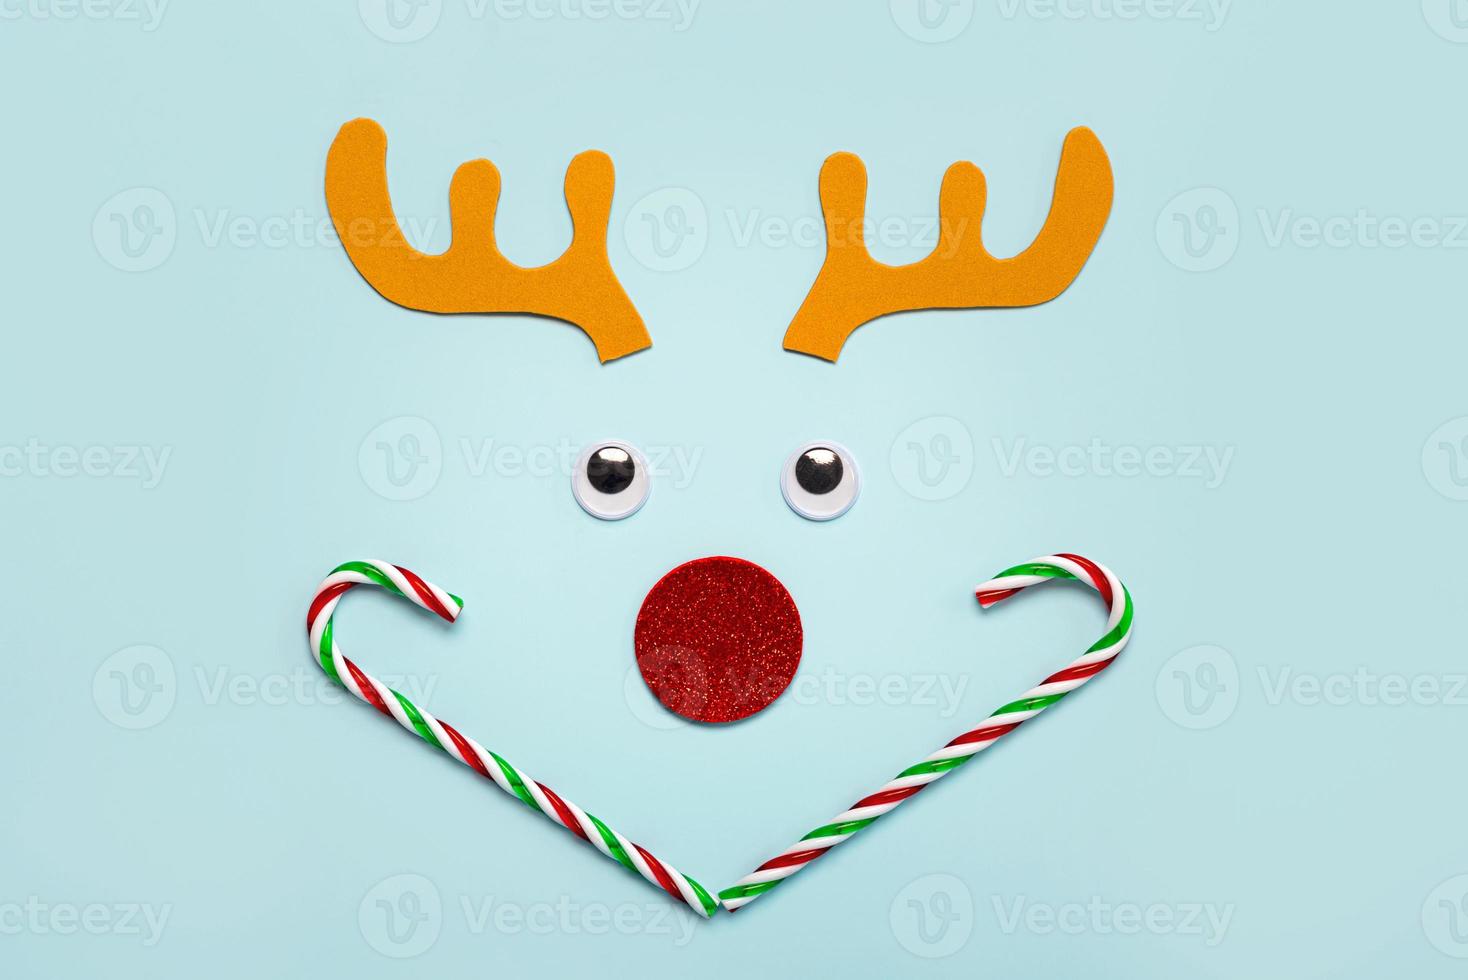 god Jul. christmas rudolph renhorn med lösögon och randiga godisrör. jul koncept bakgrund foto